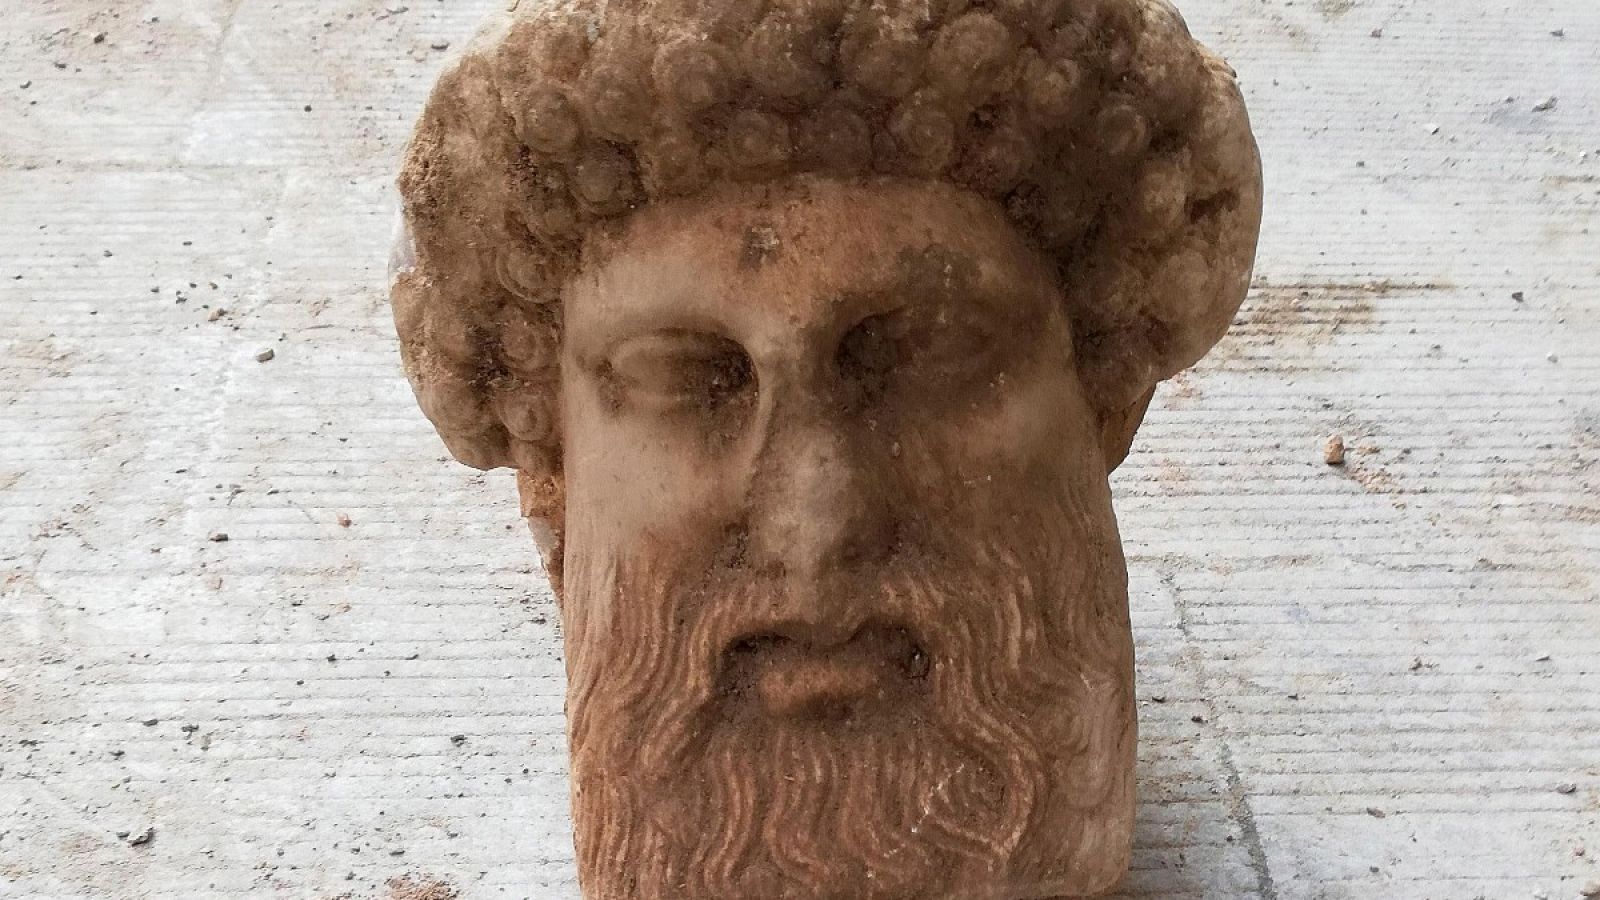 Vista de la cabeza del dios Hermes, que apareció en pleno centro de Atenas durante los trabajos de renovación del alcantarillado